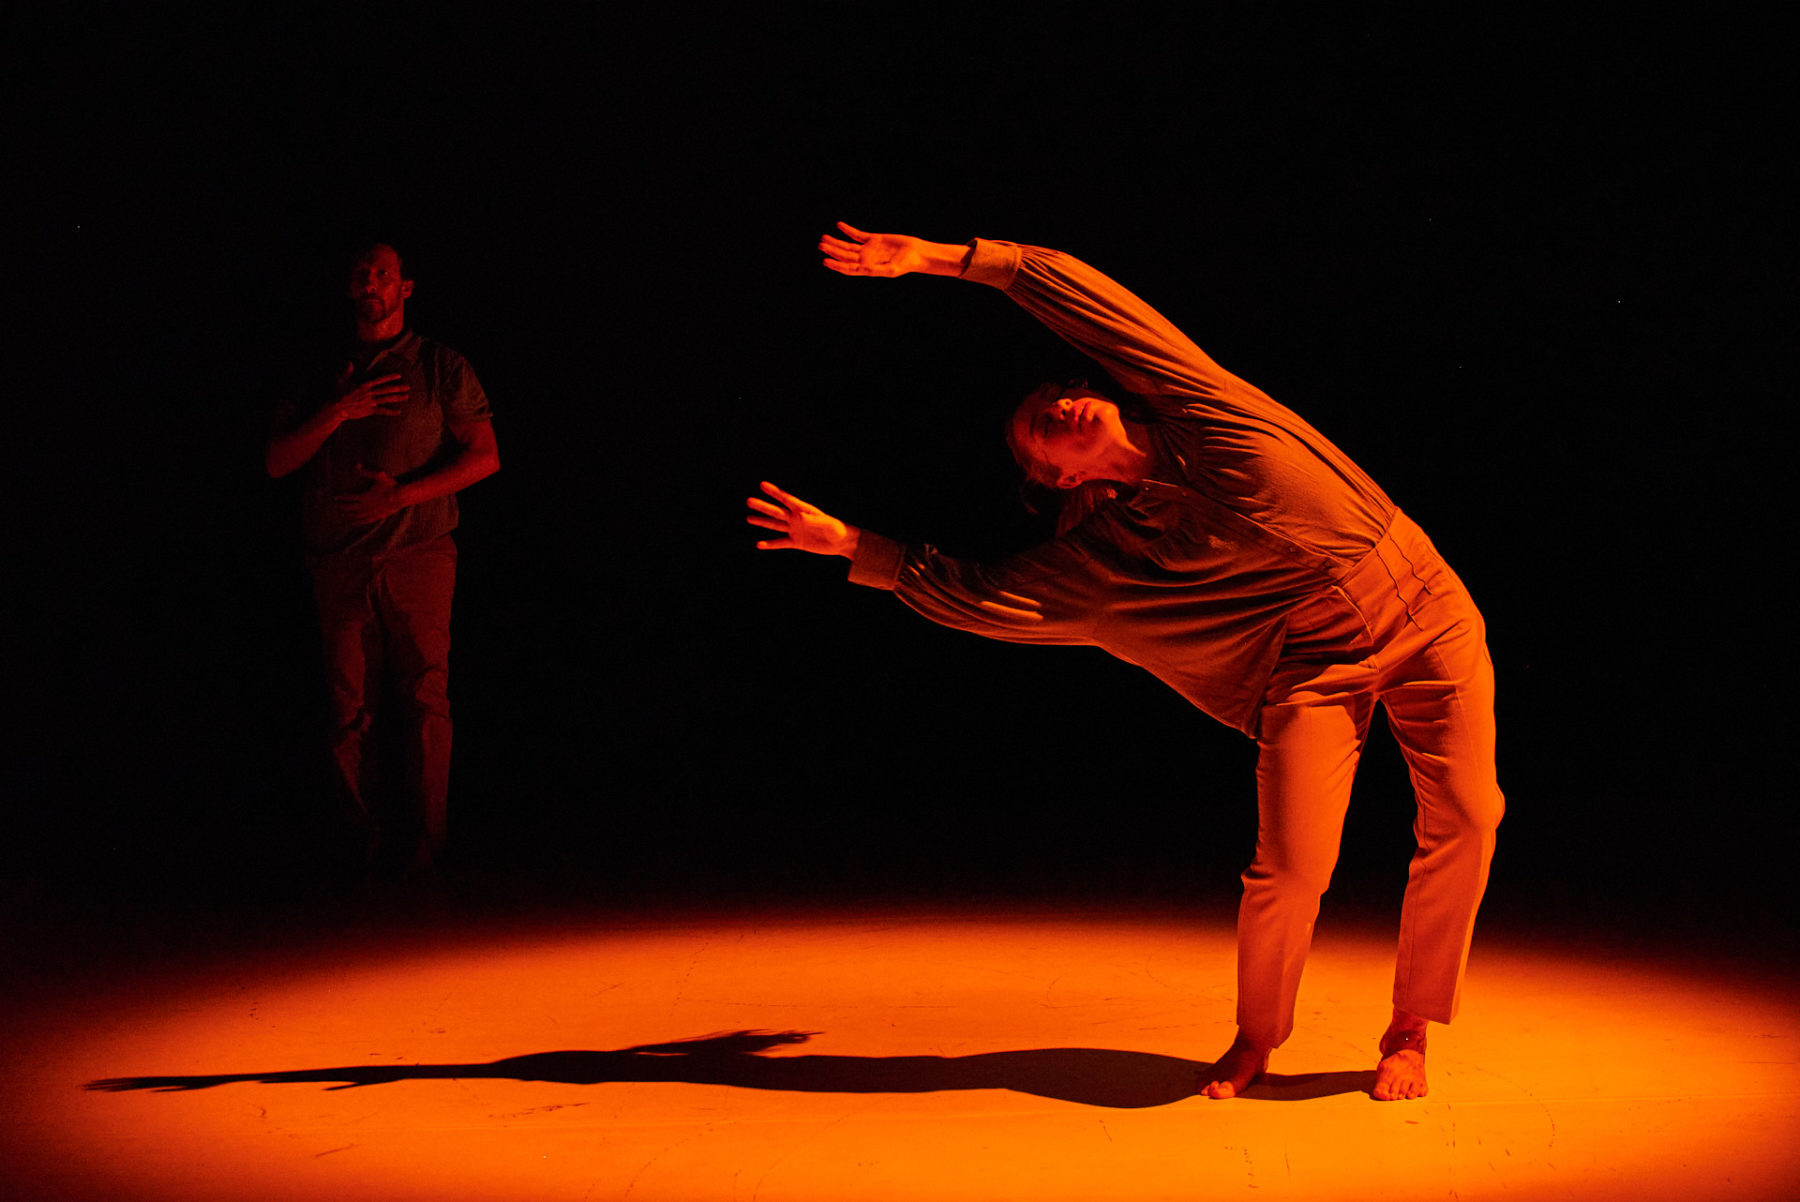 Pilar Andrés tanzt ein Solo in orangenem Licht. SIe steht auf dem Boden und hat ihren Körper nach rechts geneigt, dass der Oberkörper fast horizontal ausgerichtet ist. Im dunklen Hintergrund links hinter ihr steht Mikel Aristegui, welcher eine Hand auf seine Brust und eine auf seinen Bauch hält. Er schaut nach vorne.